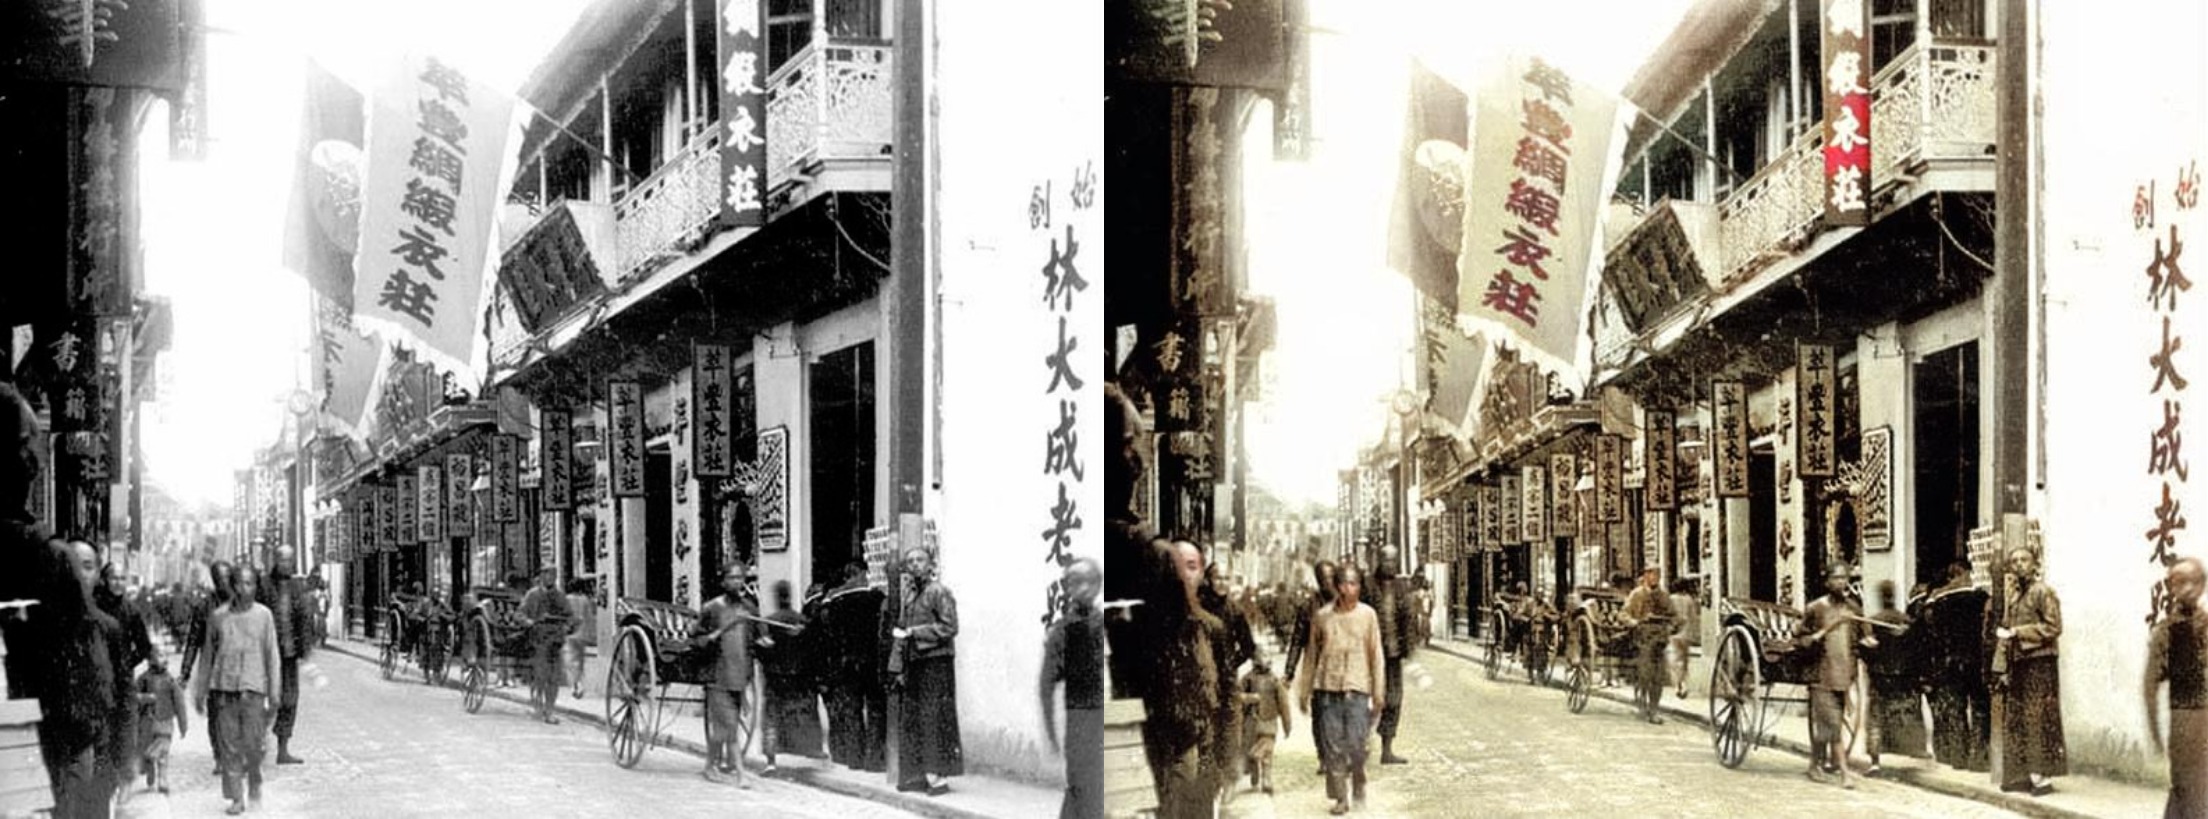 上海福州路 colorized-image-comparison